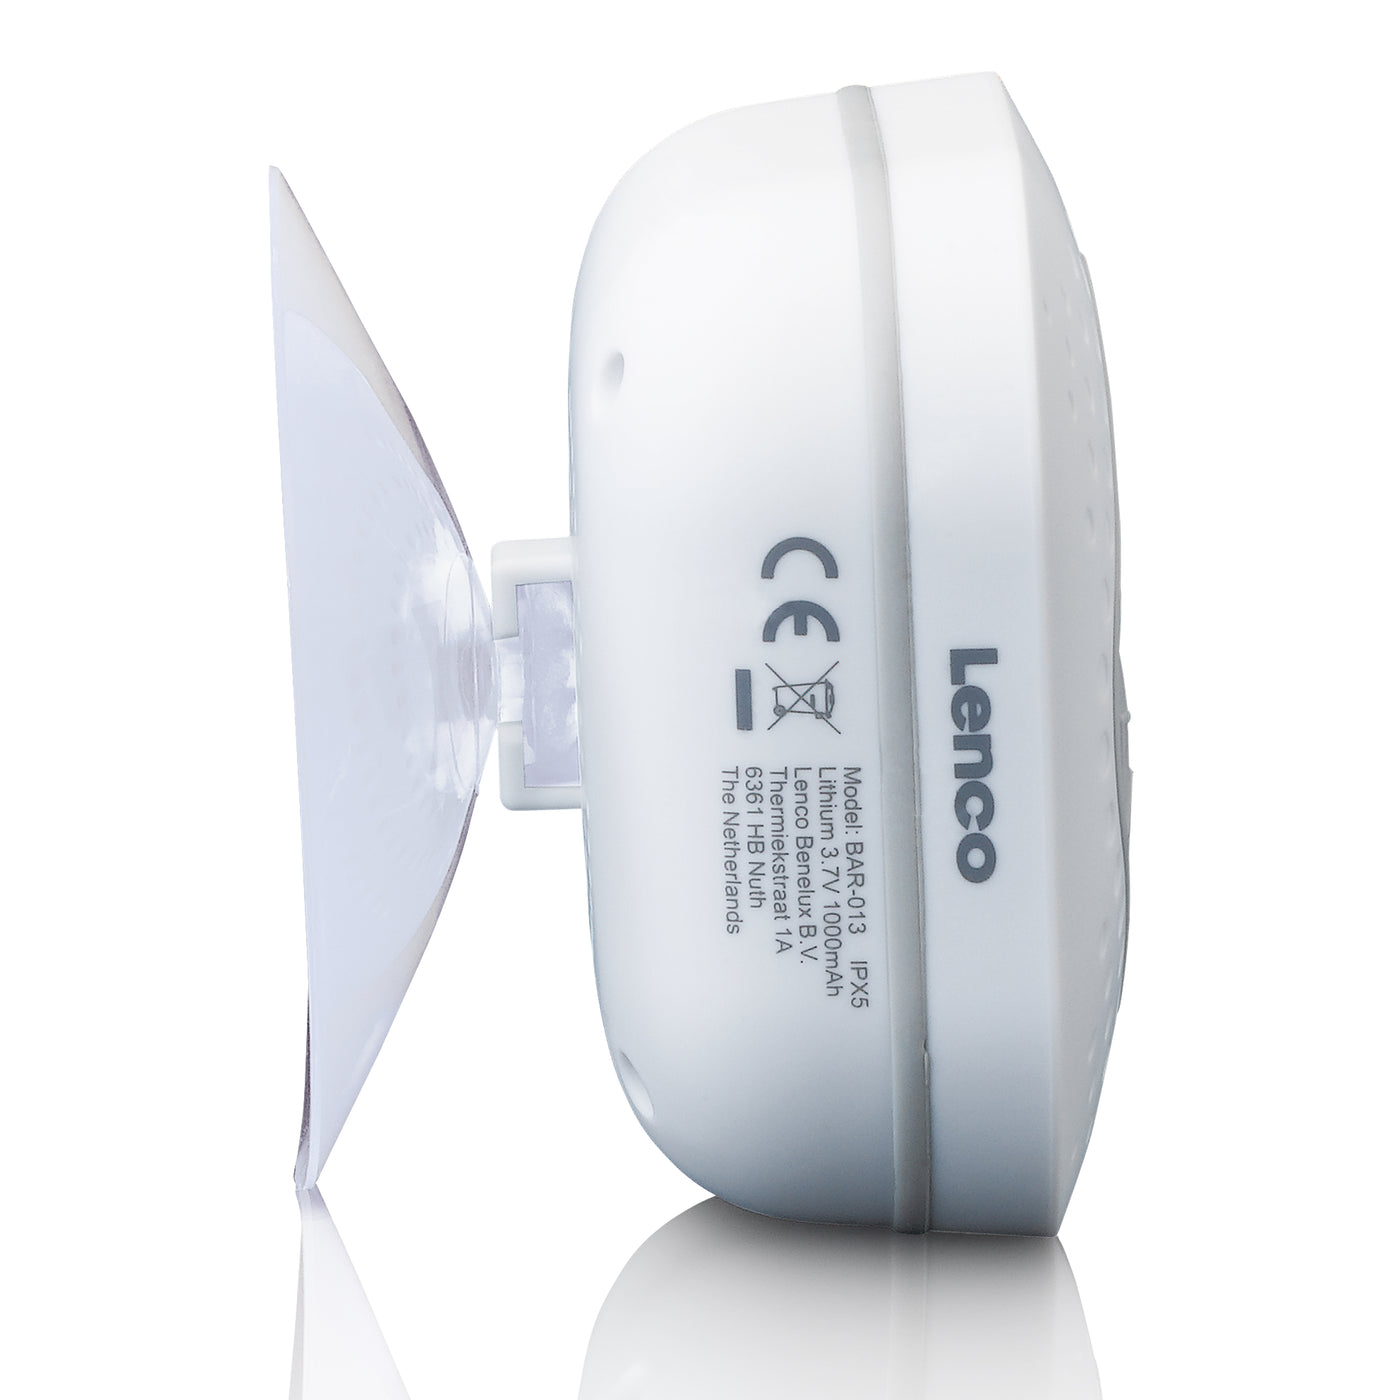 Lenco BAR-013WH - Wasserdichtes FM-Bad- und Küchenradio mit Bluetooth® und Timer - Weiß